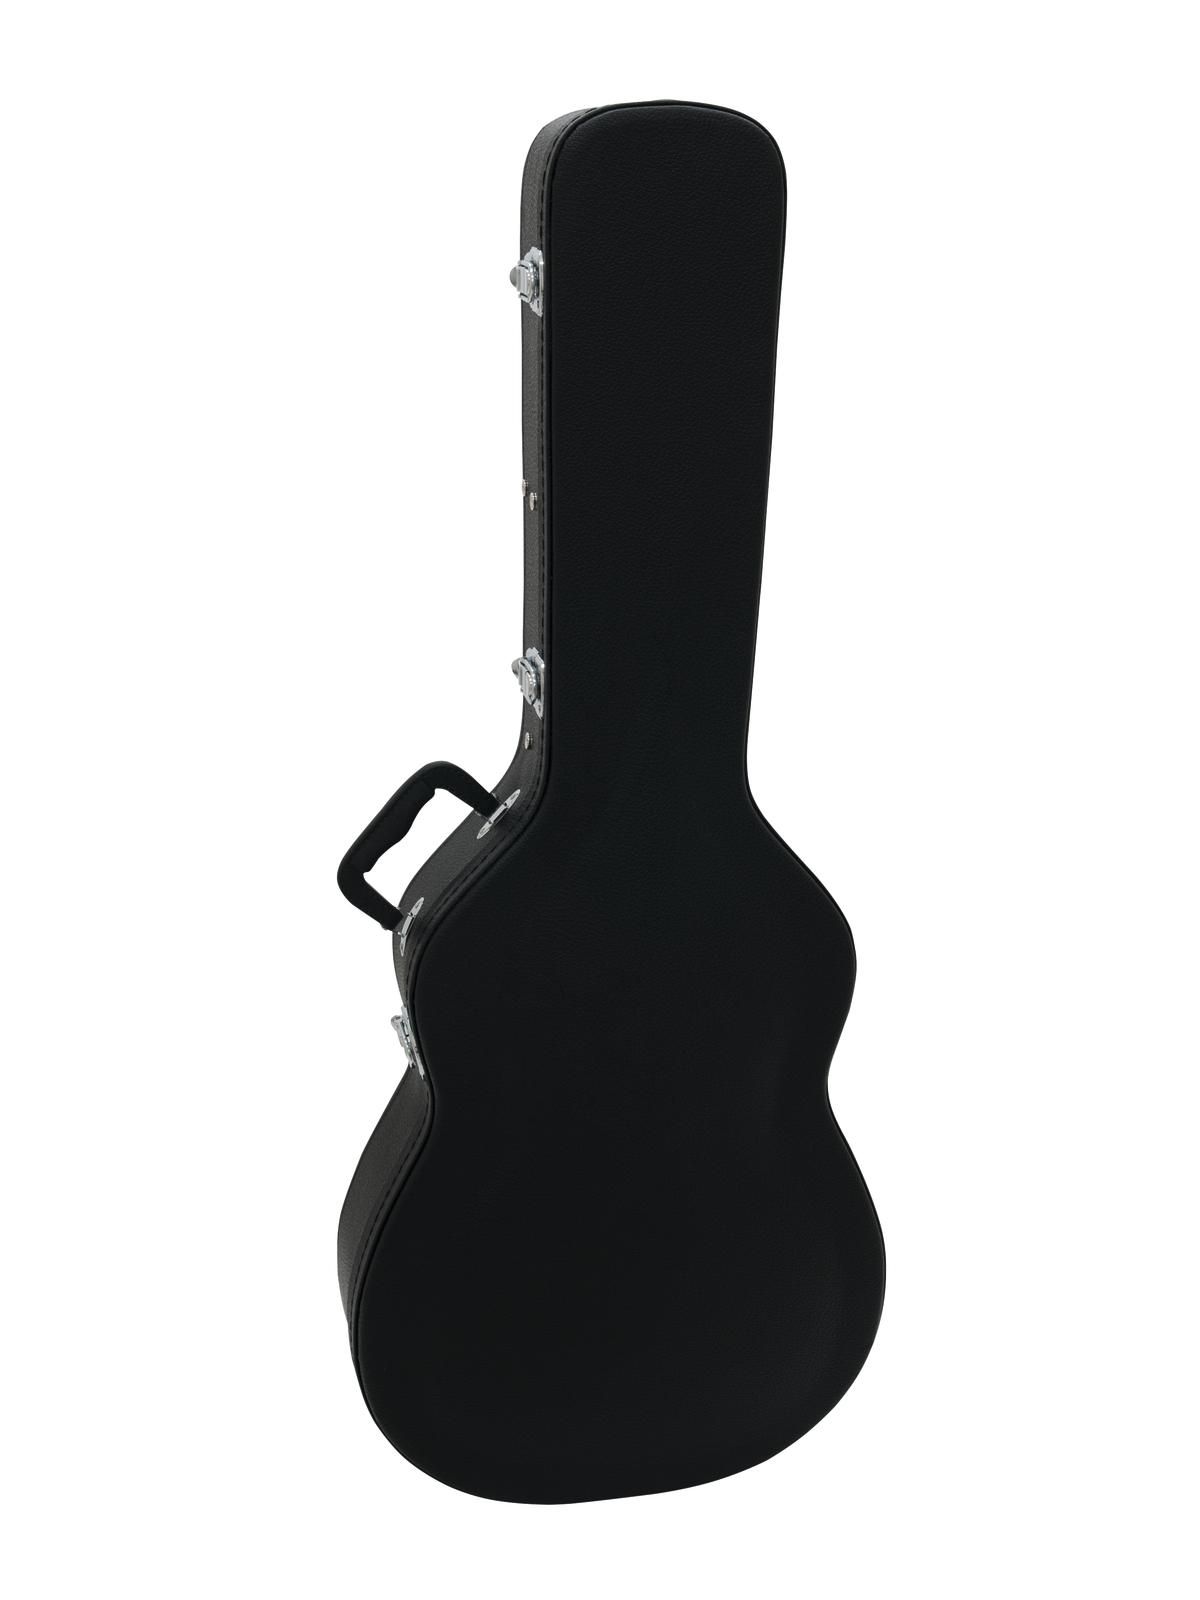 Toc Chitara Acustica Dimavery Form Case Black